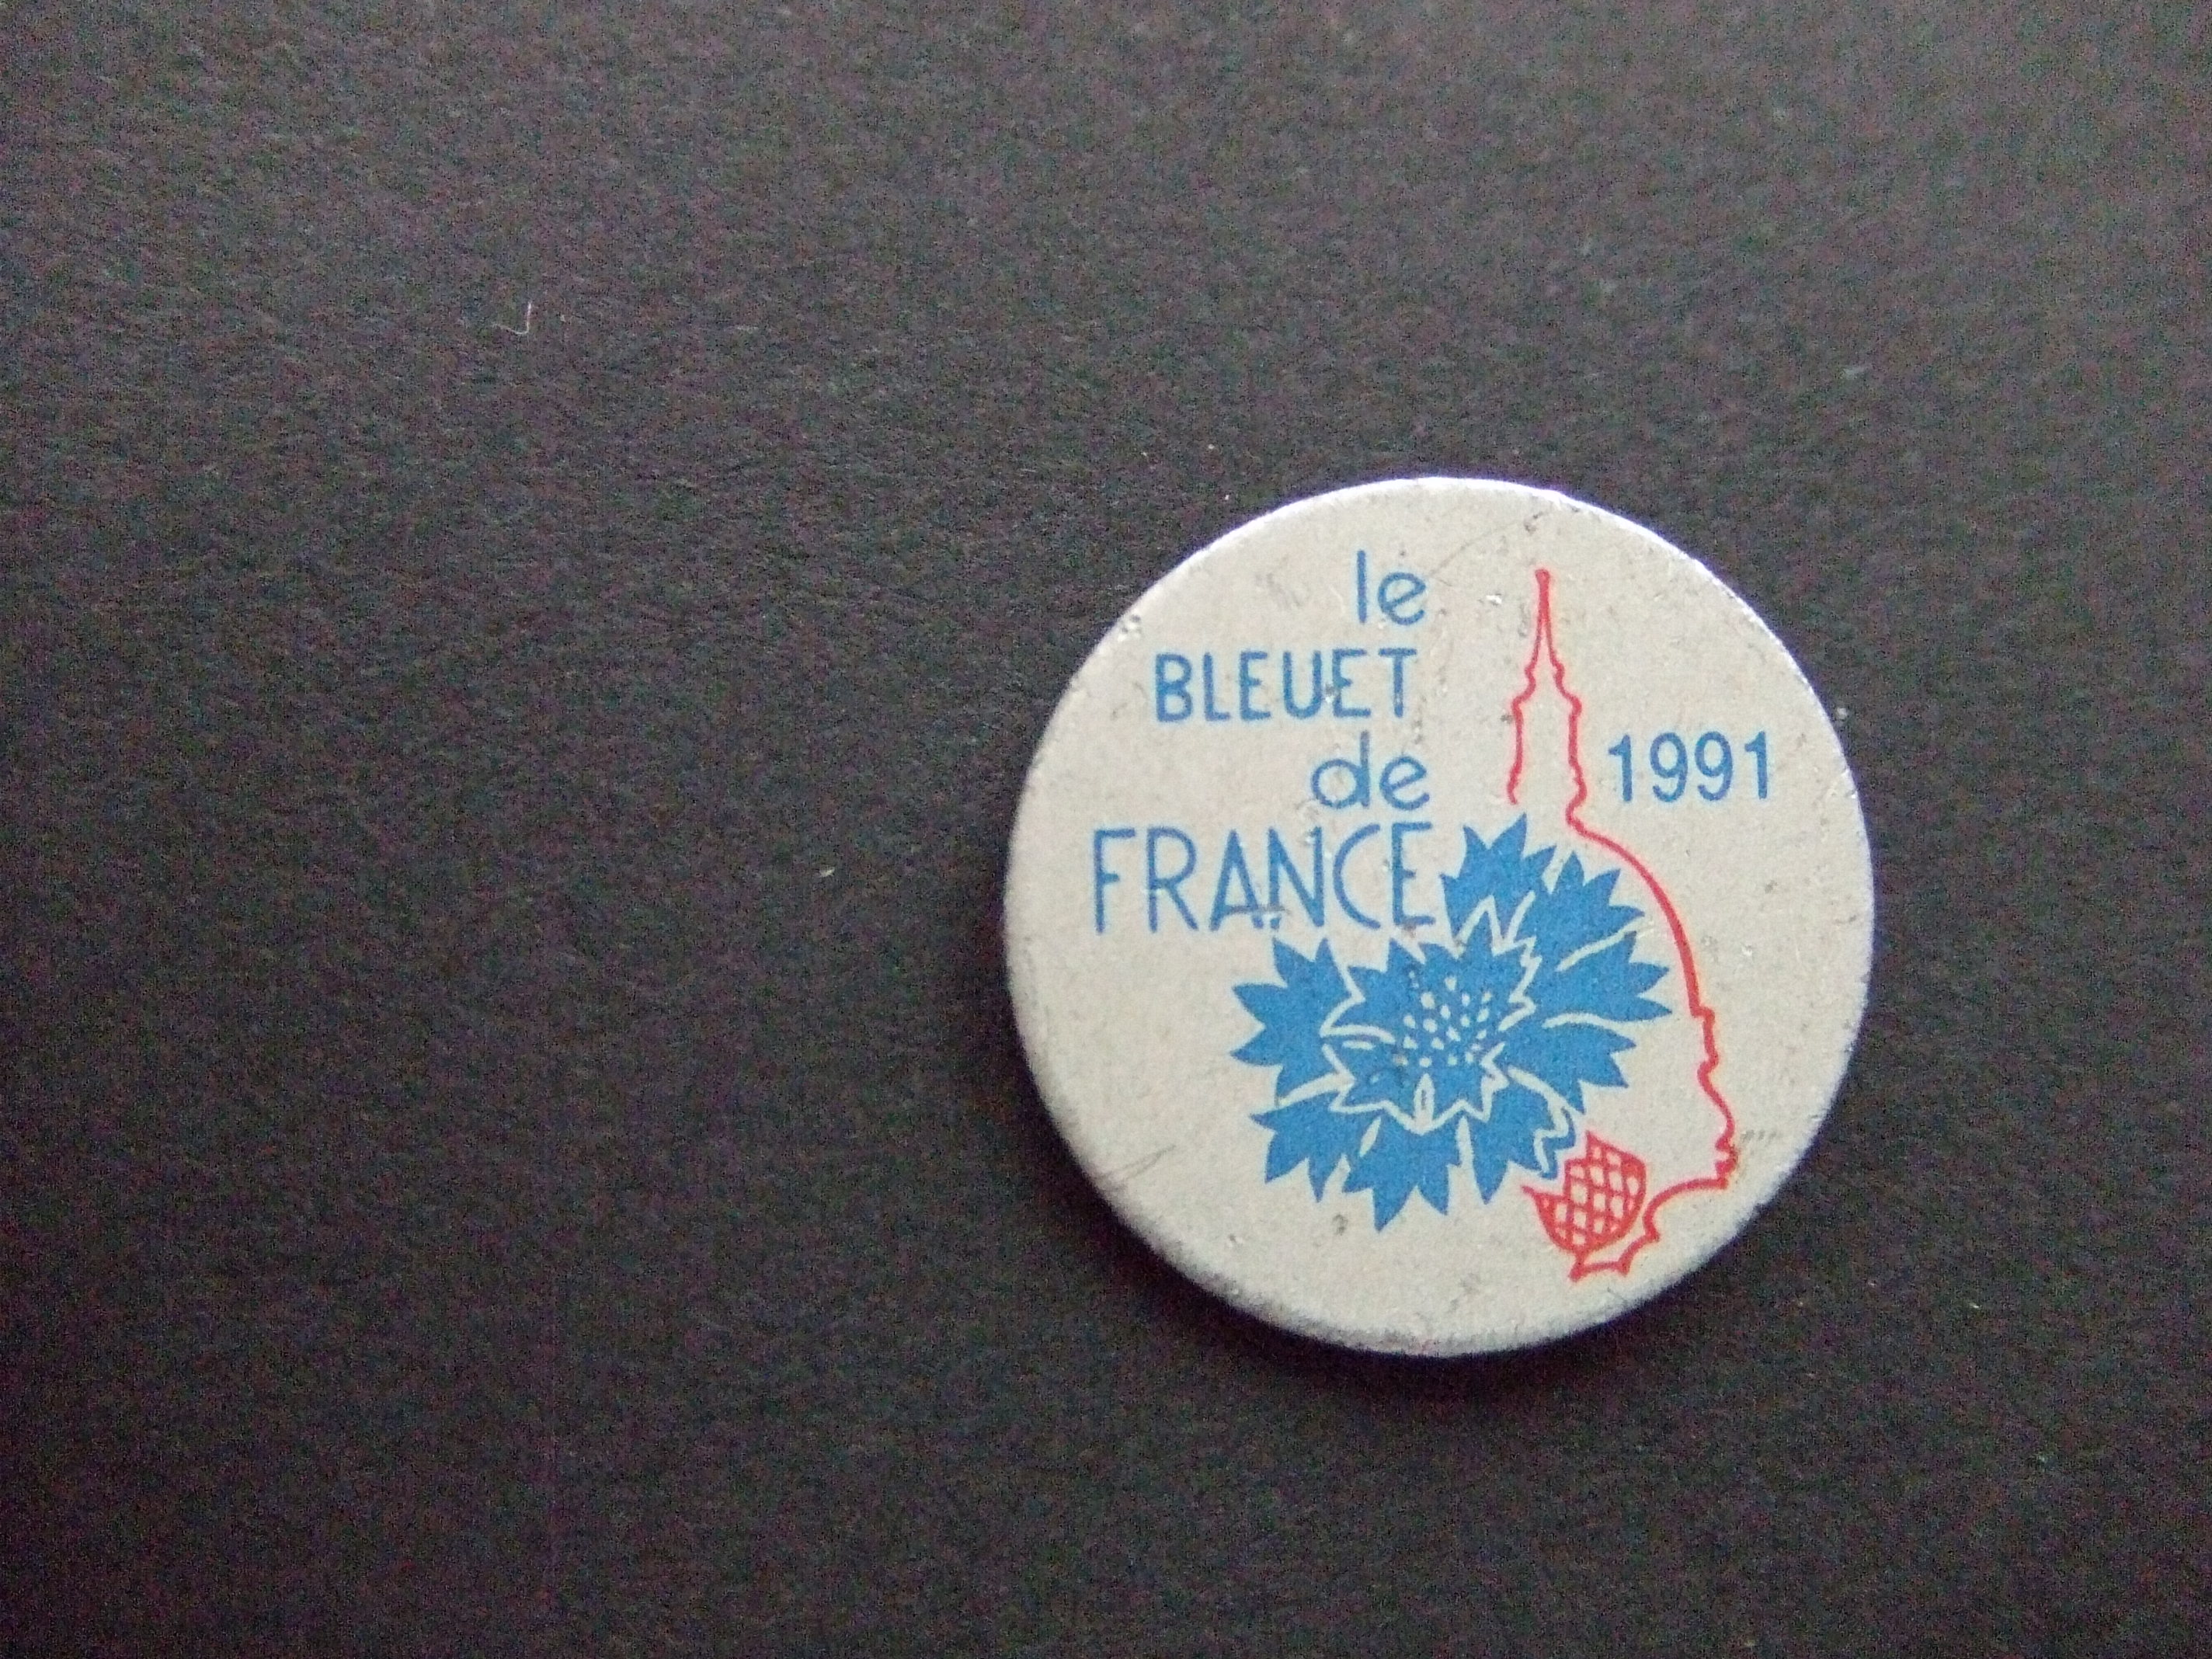 Le Bleuet de France  symbool van geheugen en solidariteit, in Frankrijk, met voormalige strijders